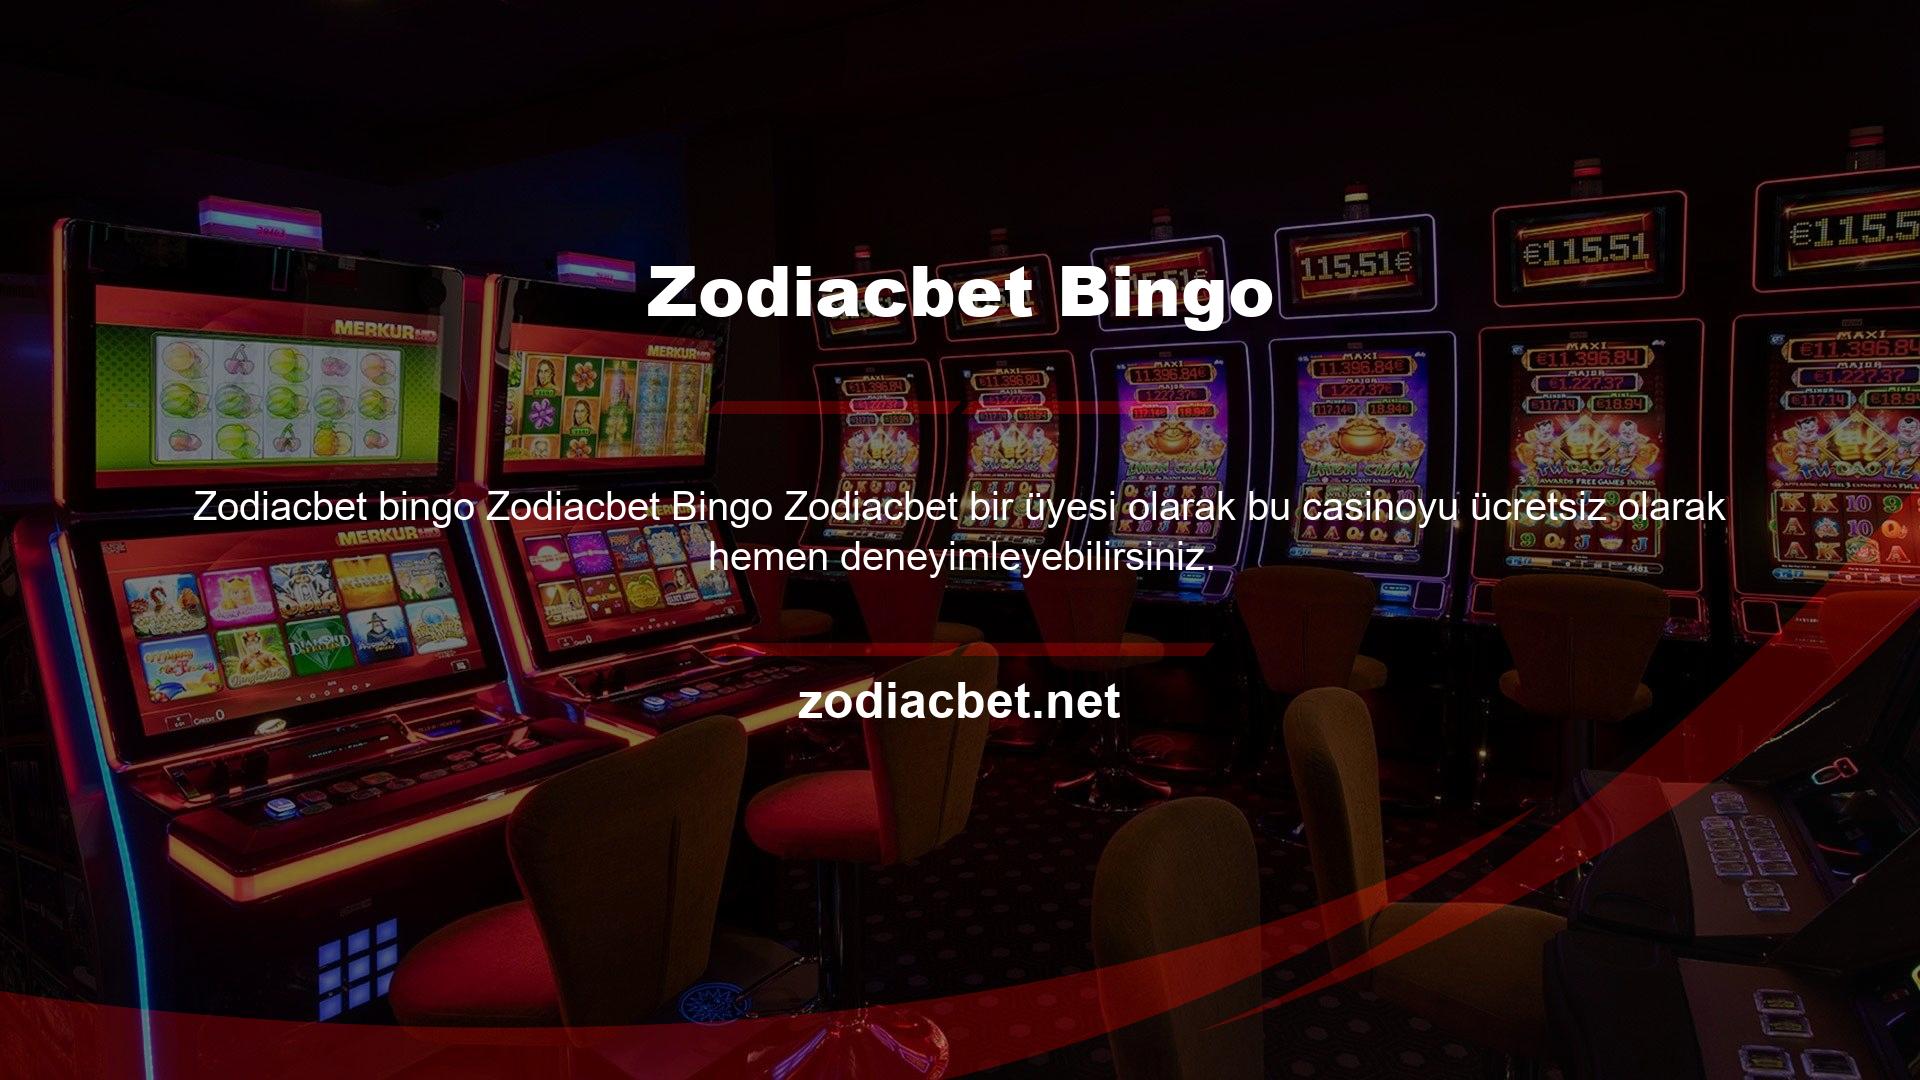 Zodiacbet Bingo, Zodiacbet Bingo web sitesinin kullanıcılarına sunduğu faydalı ve ilgi çekici oyun seçeneklerinden sadece bir tanesidir